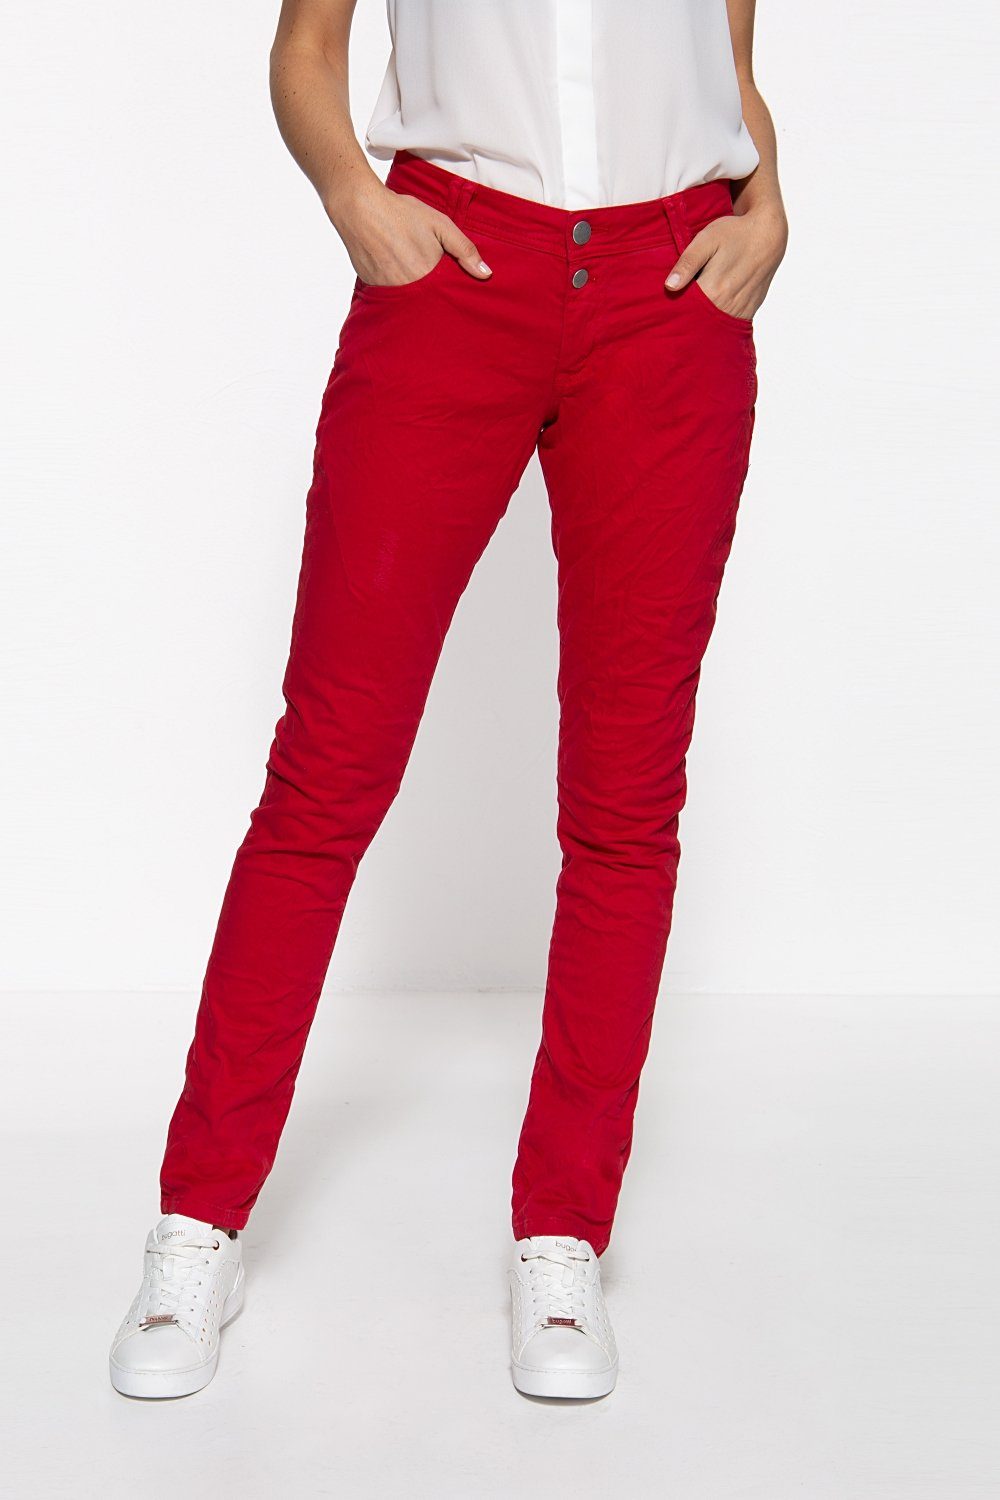 Rote Jeans mit hohem Bund für Damen online kaufen | OTTO